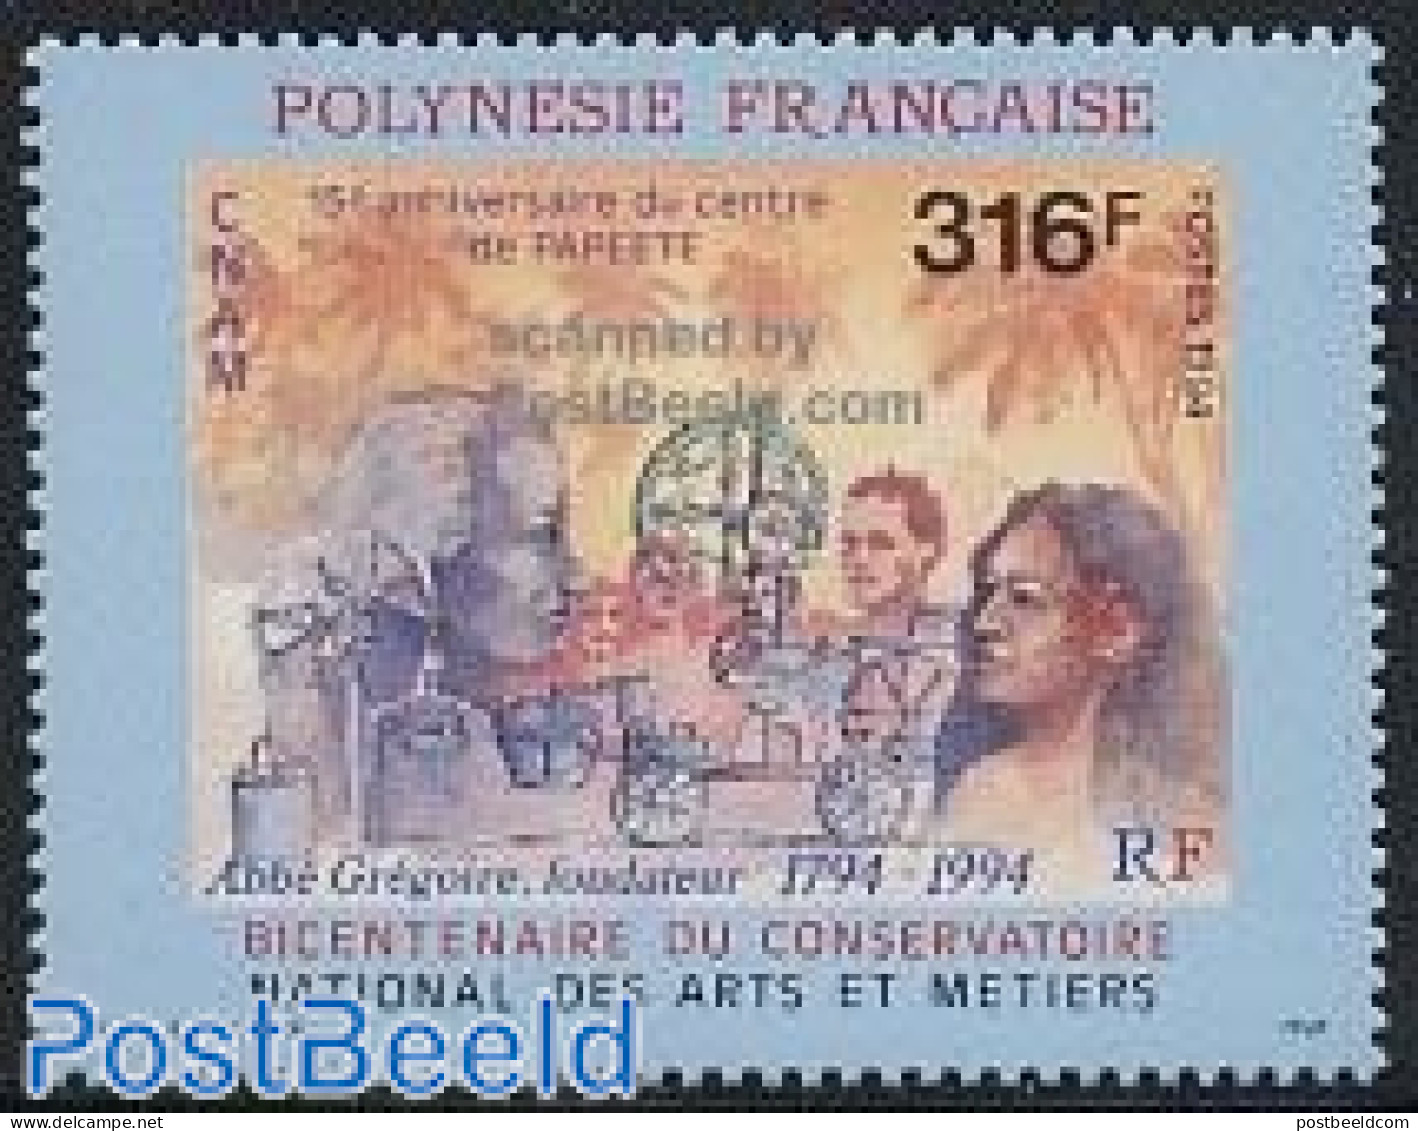 French Polynesia 1994 CNAM 1v, Mint NH - Nuevos